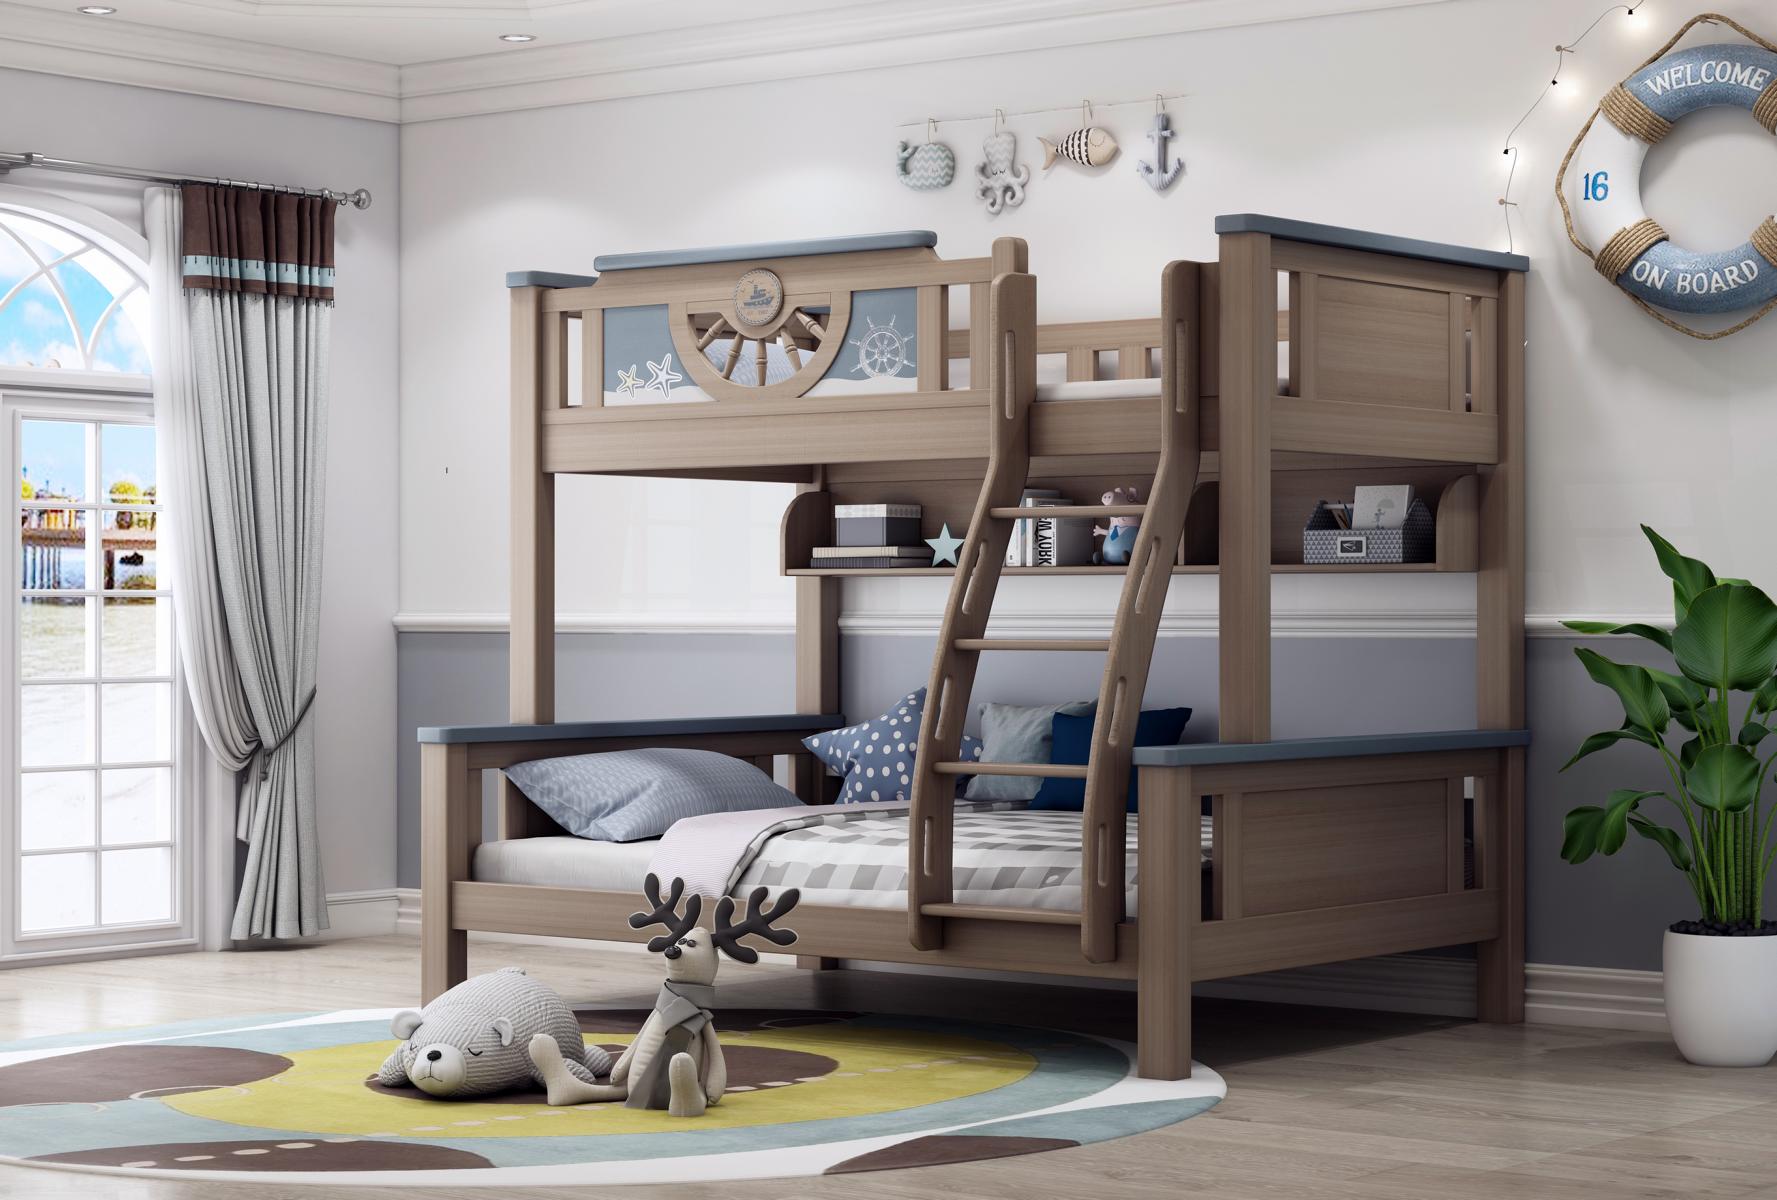 Doppelstockbett Kinder Jugend Zimmer Möbel Holz Etagen Hoch Bett Doppel Betten